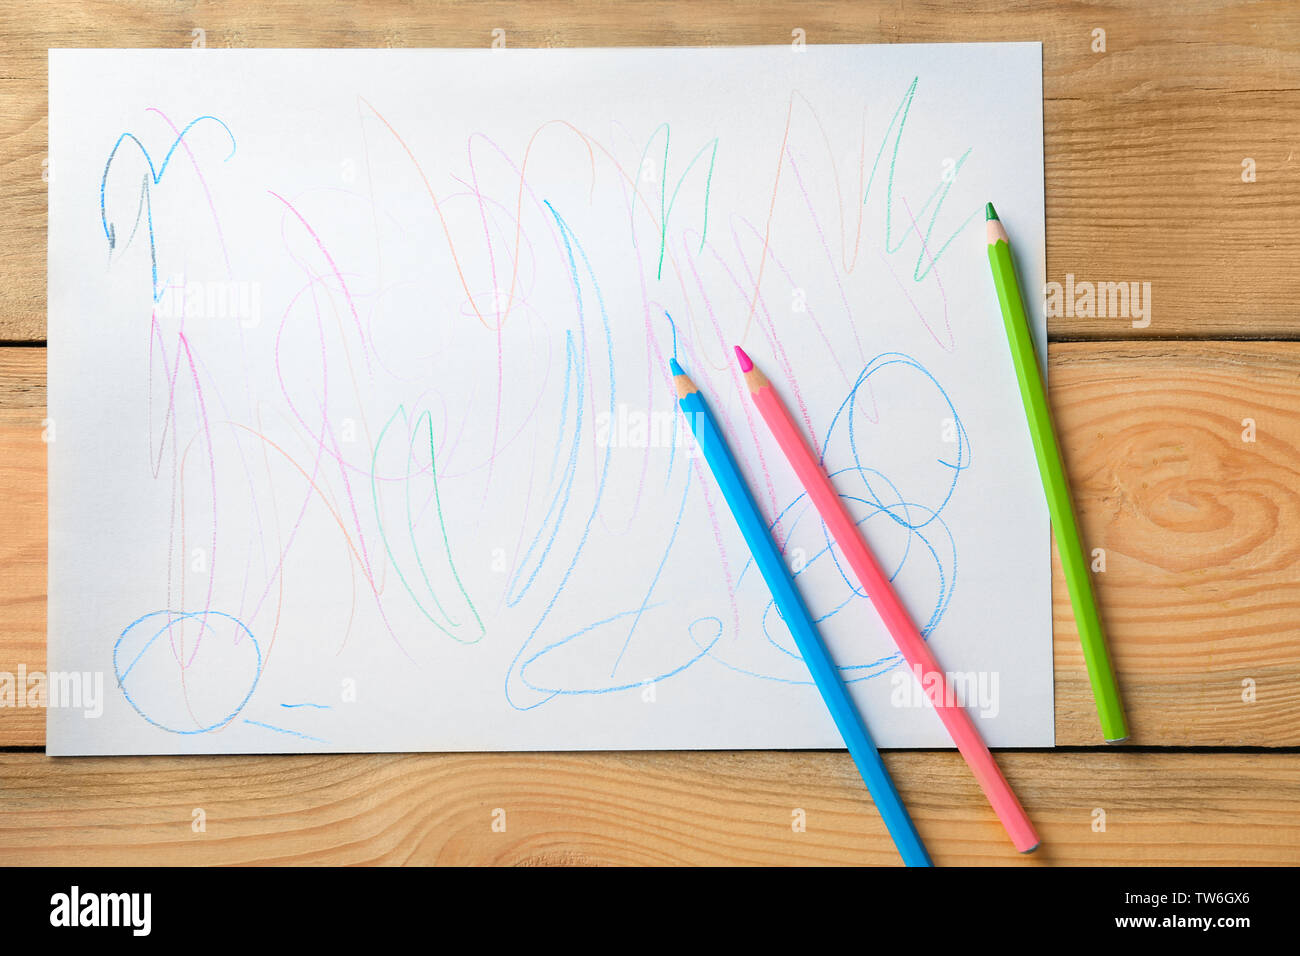 Colorful abstract dessin d'enfant sur fond de bois Banque D'Images